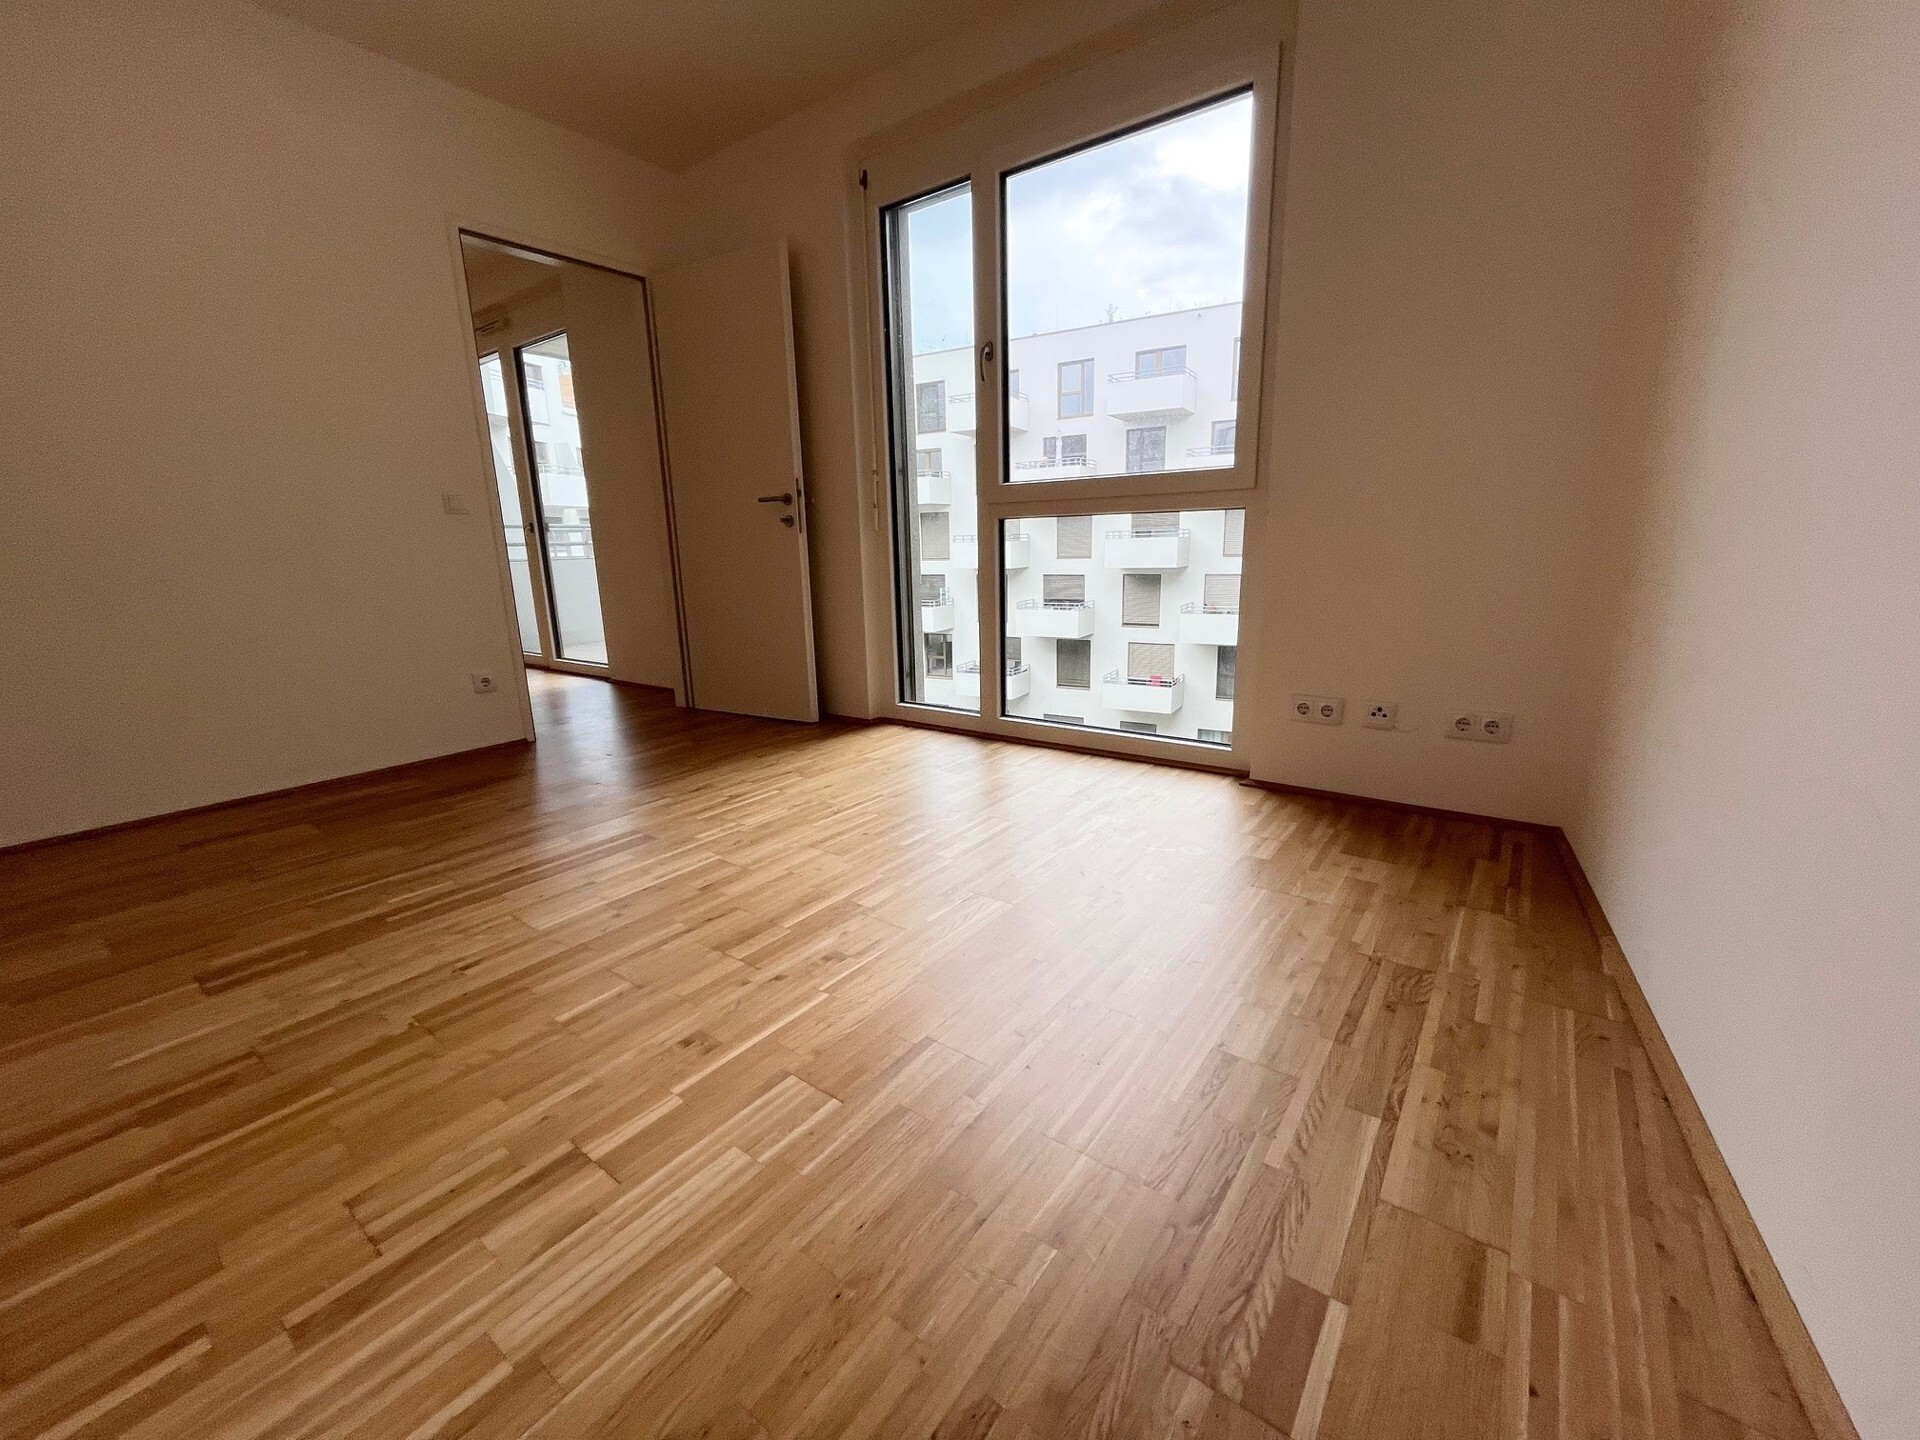 2-Zimmer Wohnung - mit Balkon - Innenhoflage - ab sofort verfügbar